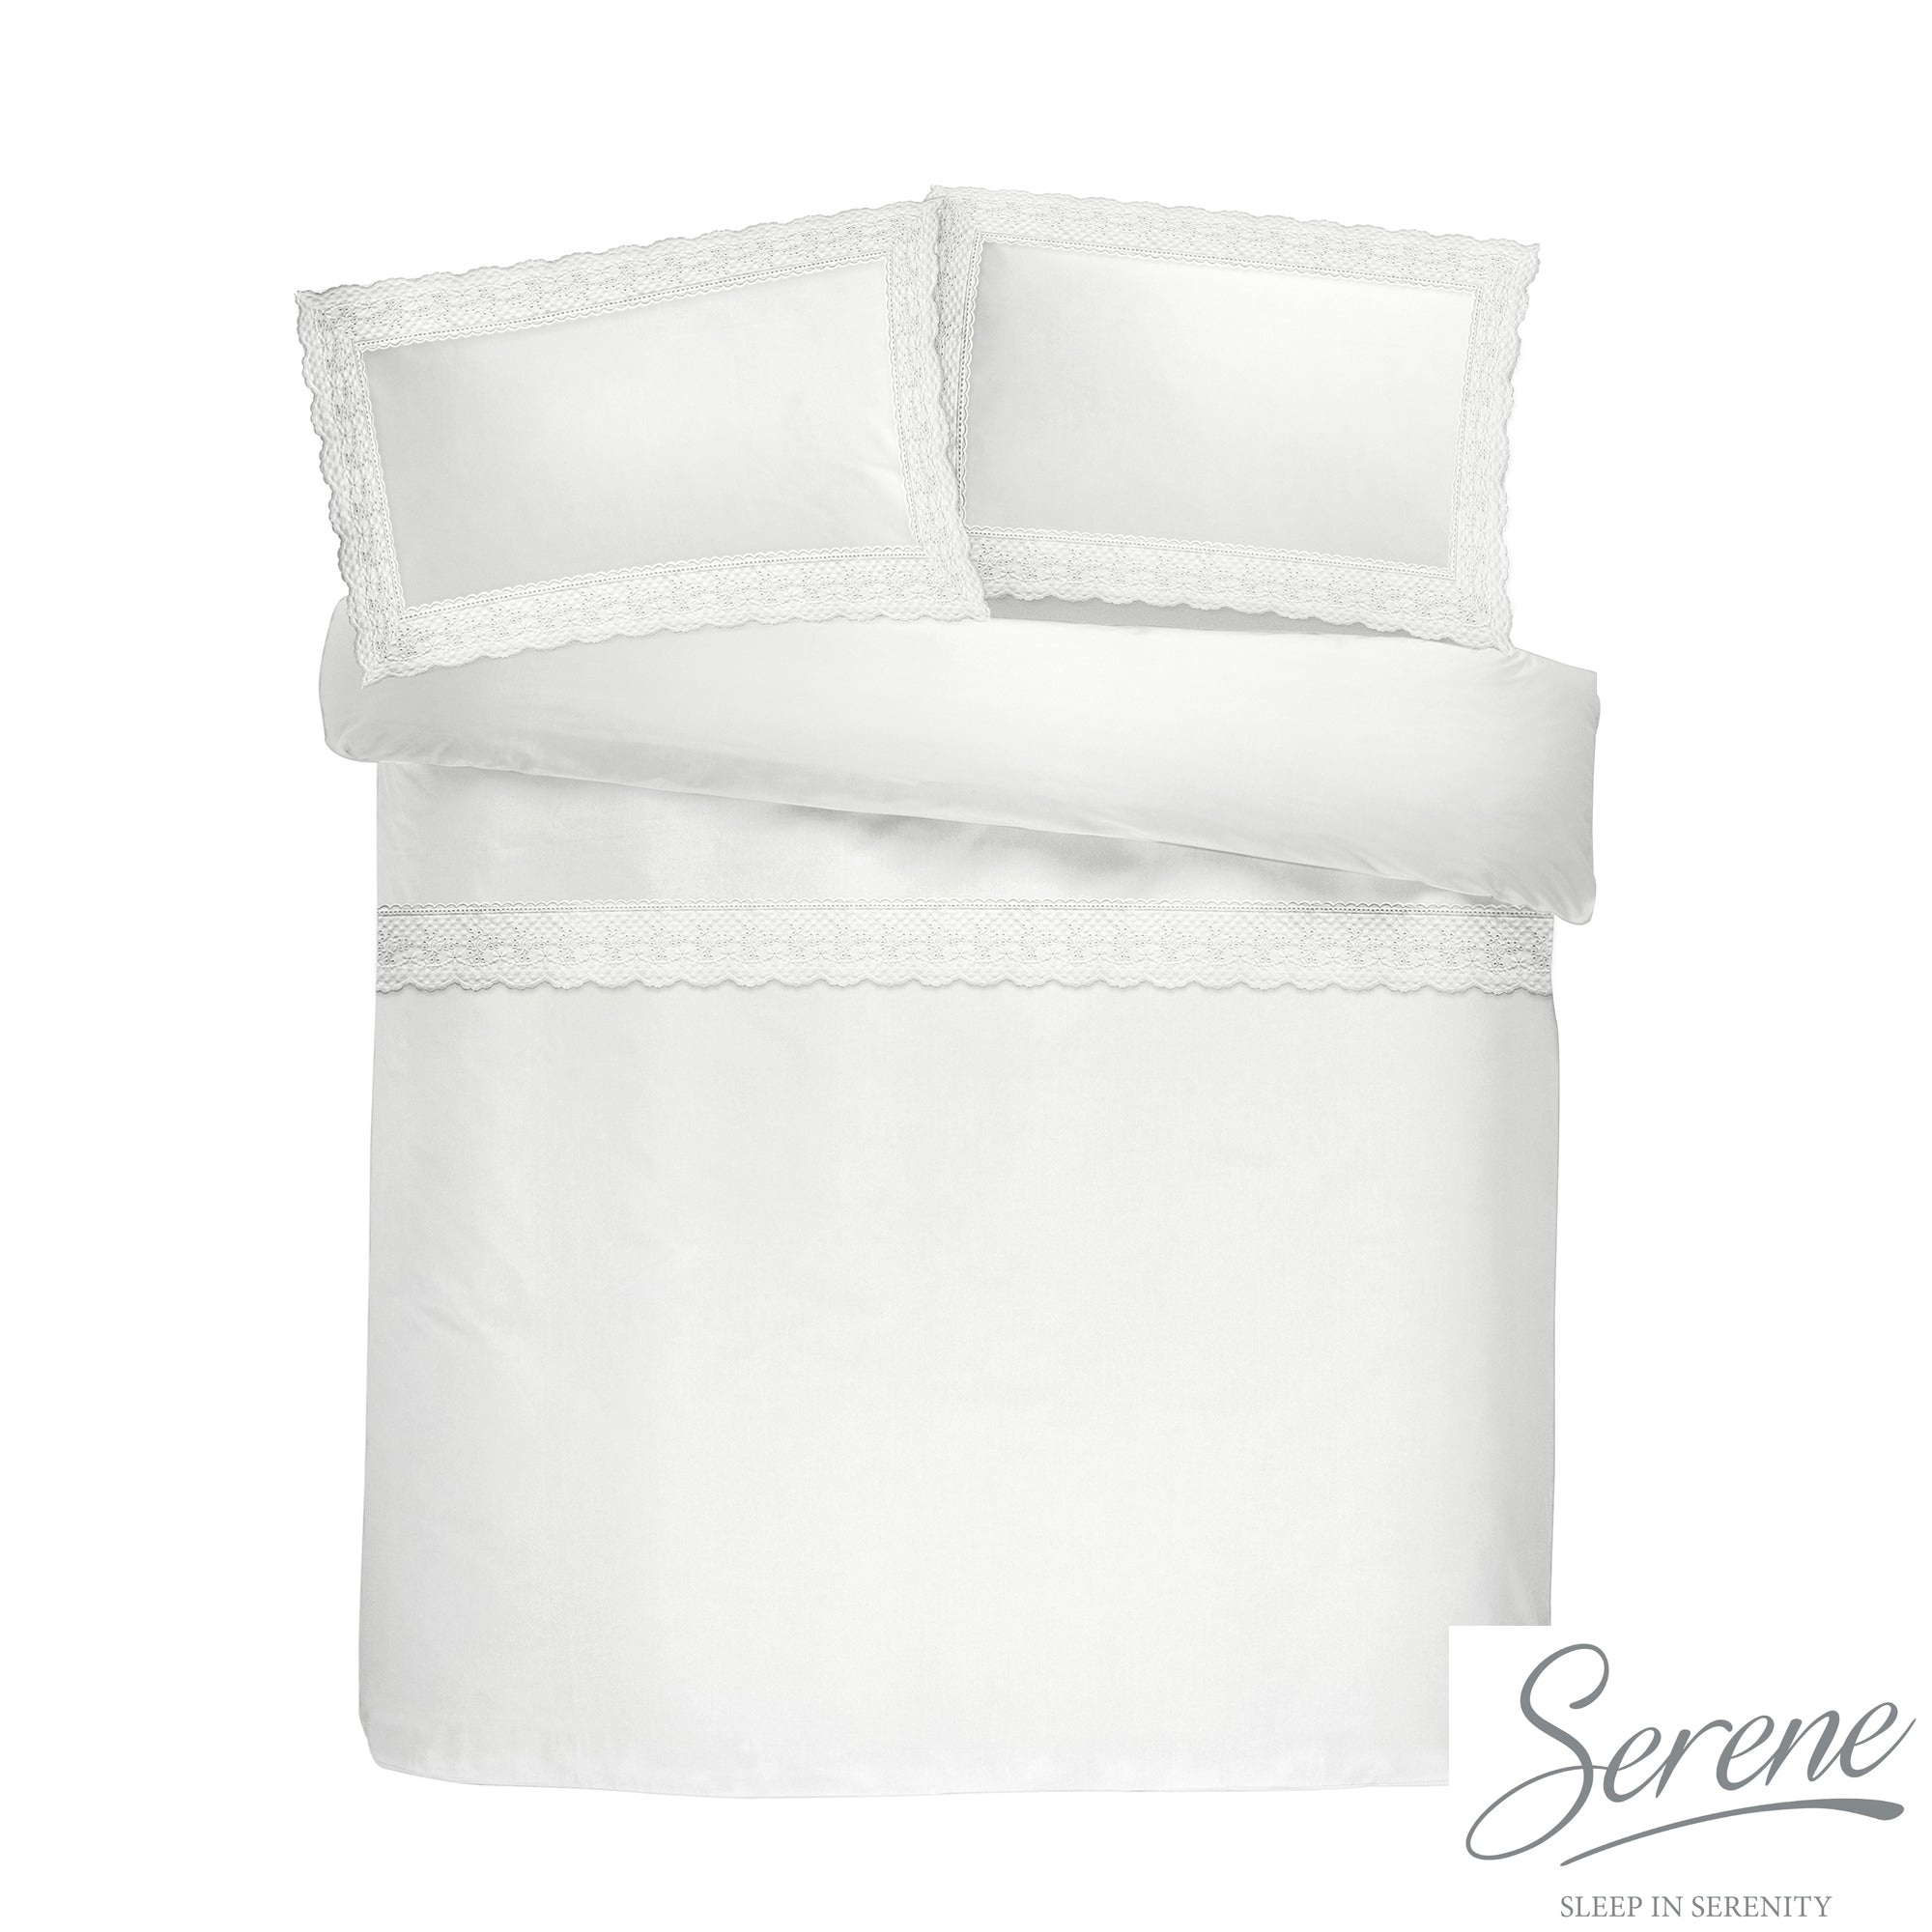 Renaissance - Easy Care Duvet Cover Set in White - by Serene